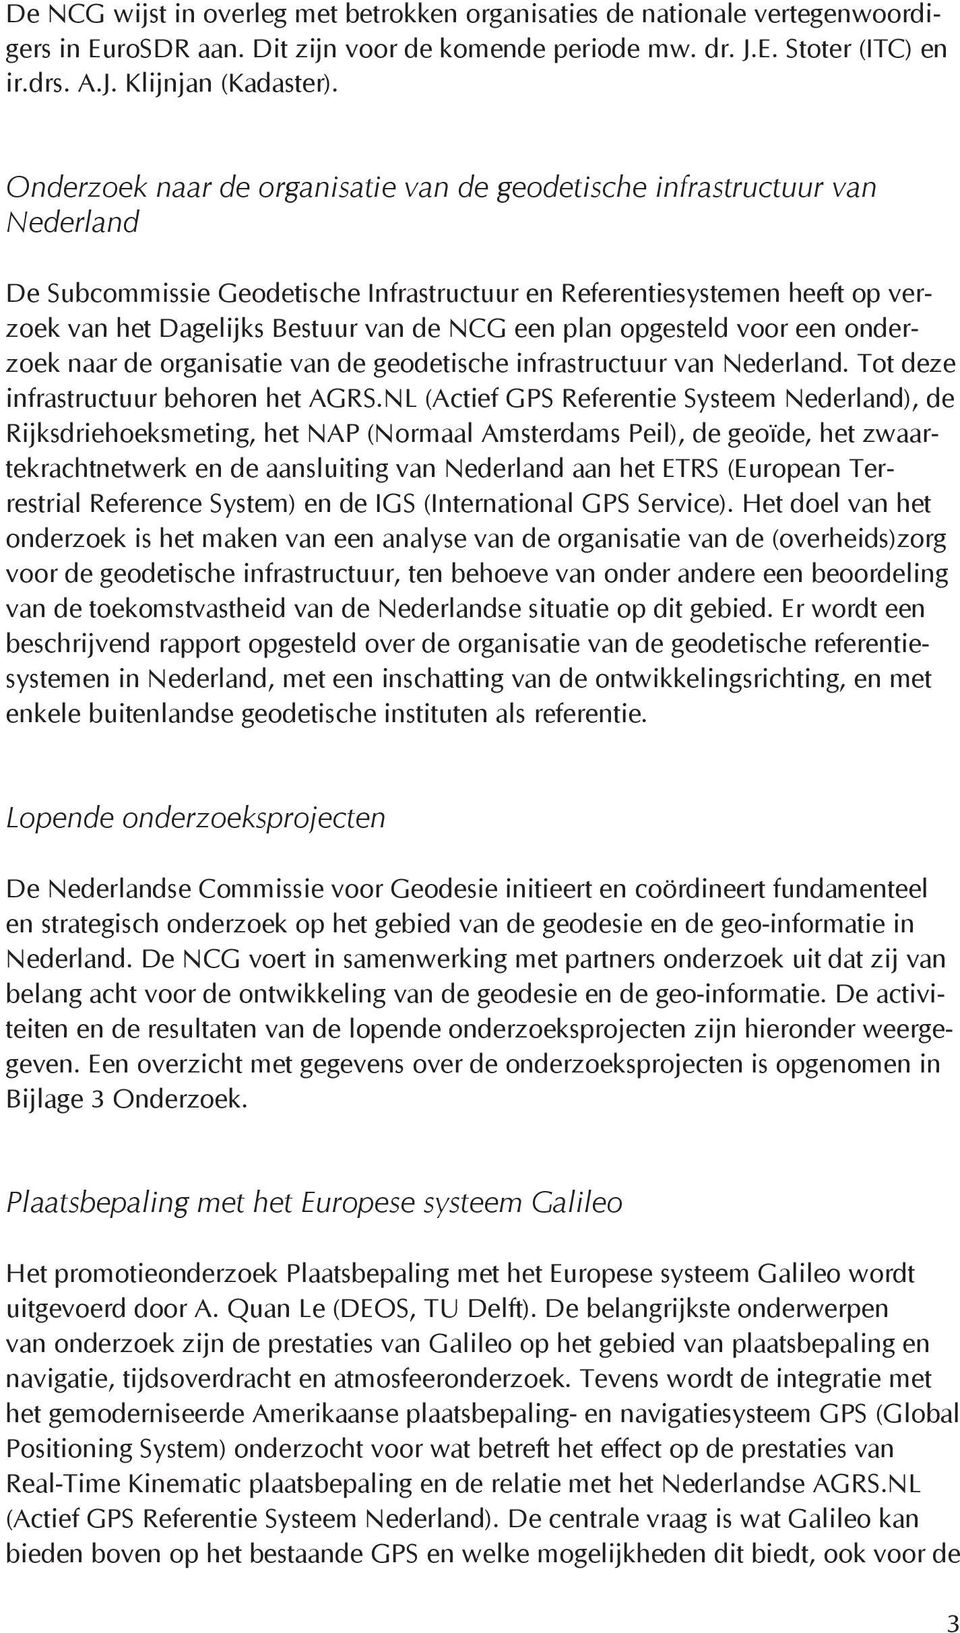 een plan opgesteld voor een onderzoek naar de organisatie van de geodetische infrastructuur van Nederland. Tot deze infrastructuur behoren het AGRS.